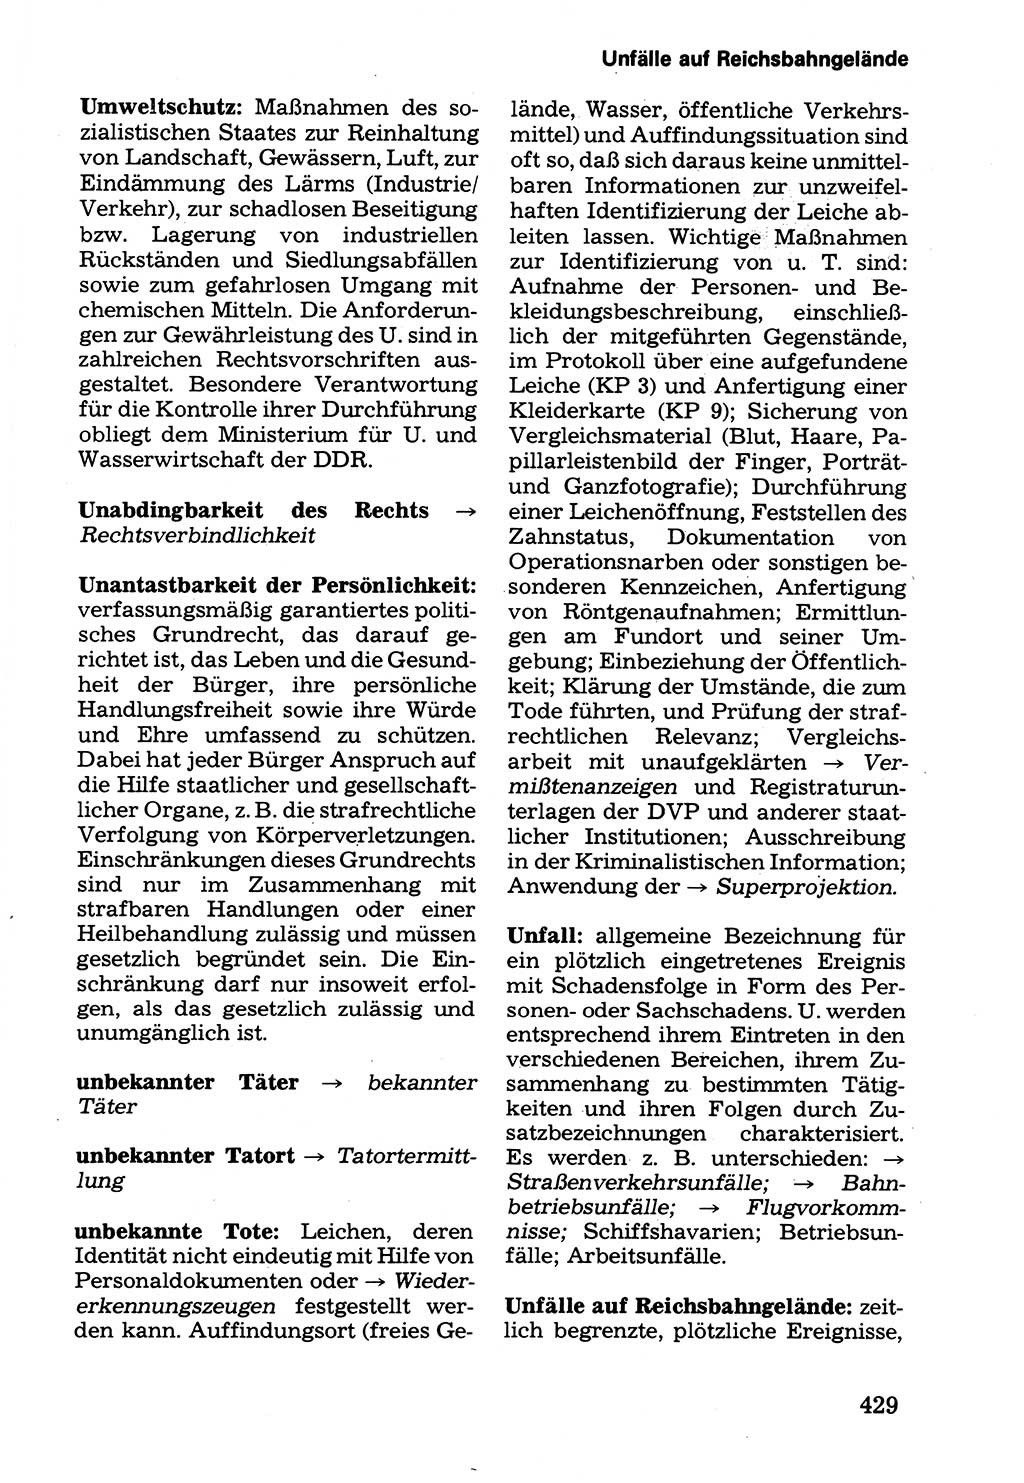 Wörterbuch der sozialistischen Kriminalistik [Deutsche Demokratische Republik (DDR)] 1981, Seite 429 (Wb. soz. Krim. DDR 1981, S. 429)